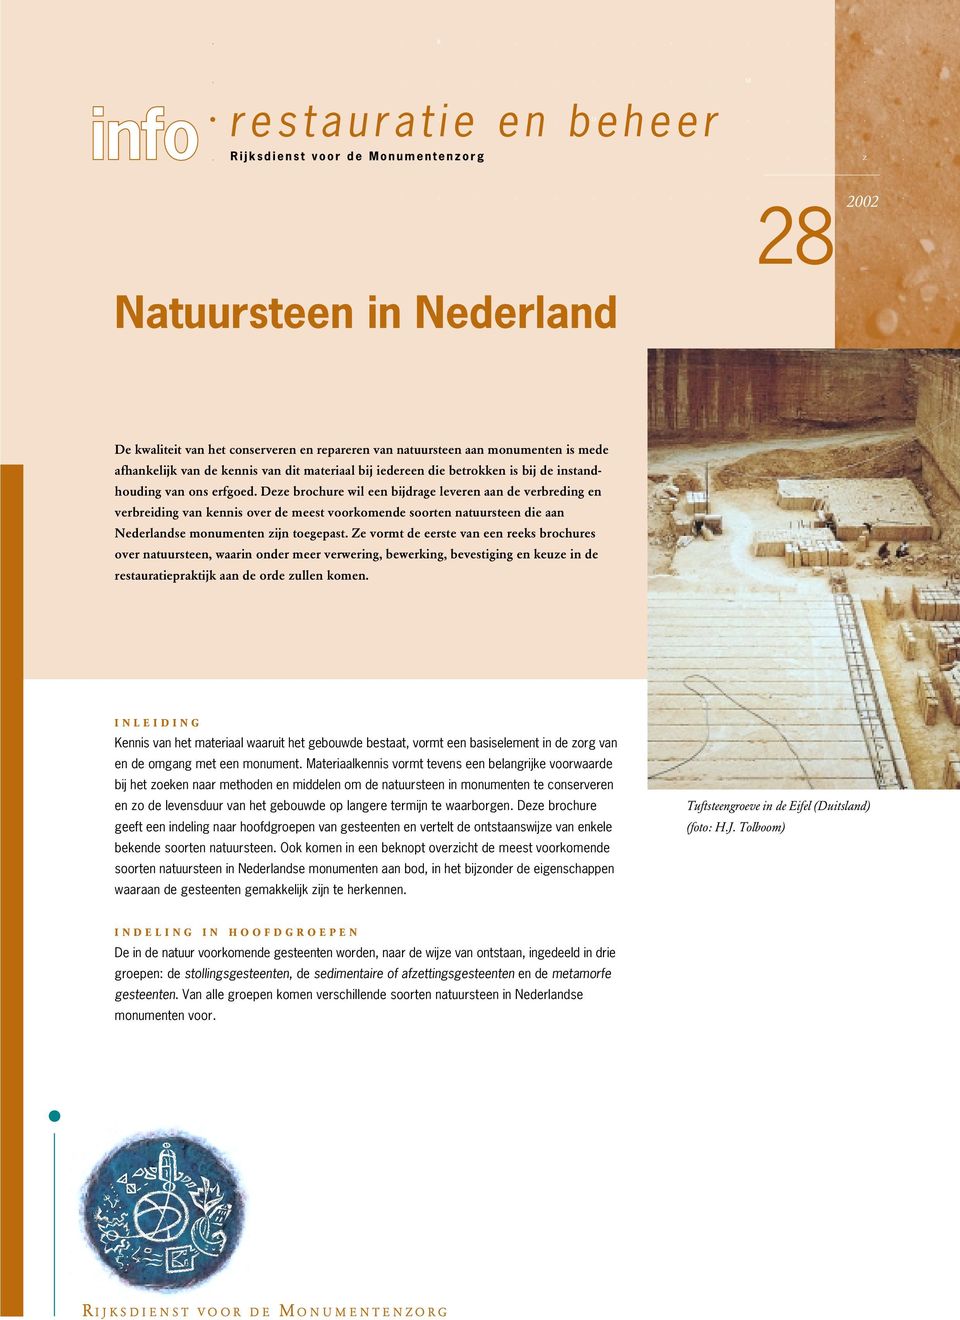 van ons erfgoed. Deze brochure wil een bijdrage leveren aan de verbreding en verbreiding van kennis over de meest voorkomende soorten natuursteen die aan Nederlandse monumenten zijn toegepast.